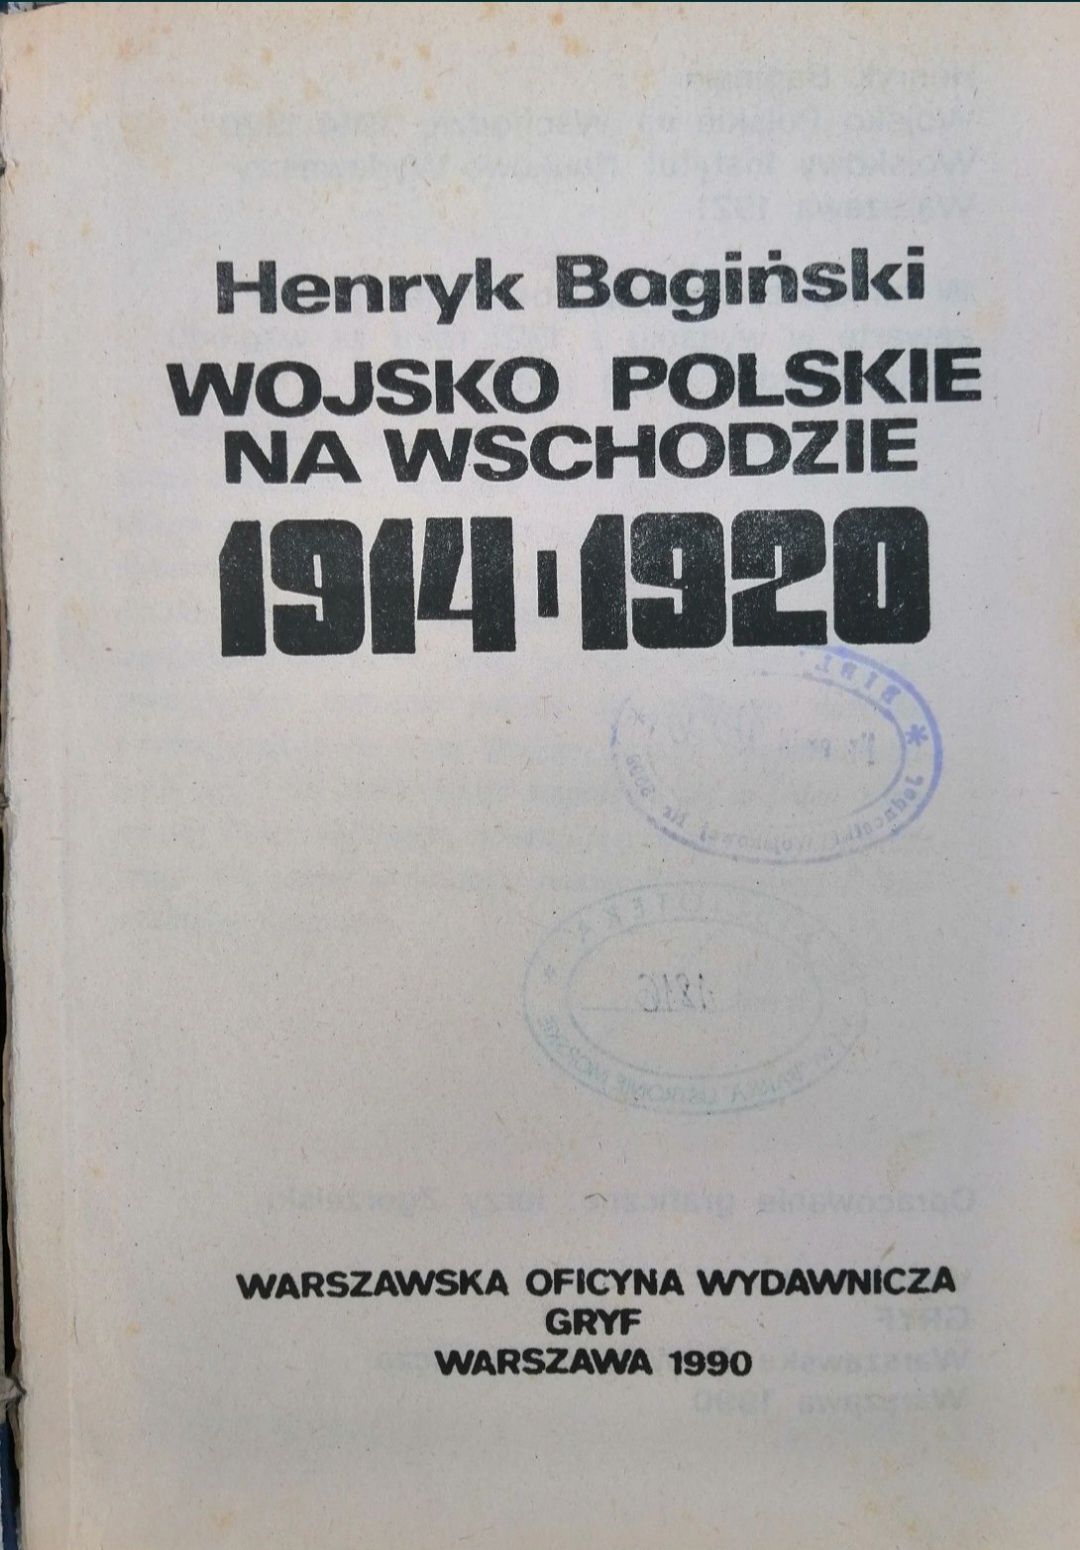 Wojsko Polskie na wschodzie 1914 do 1920 - Henryk Bagiński